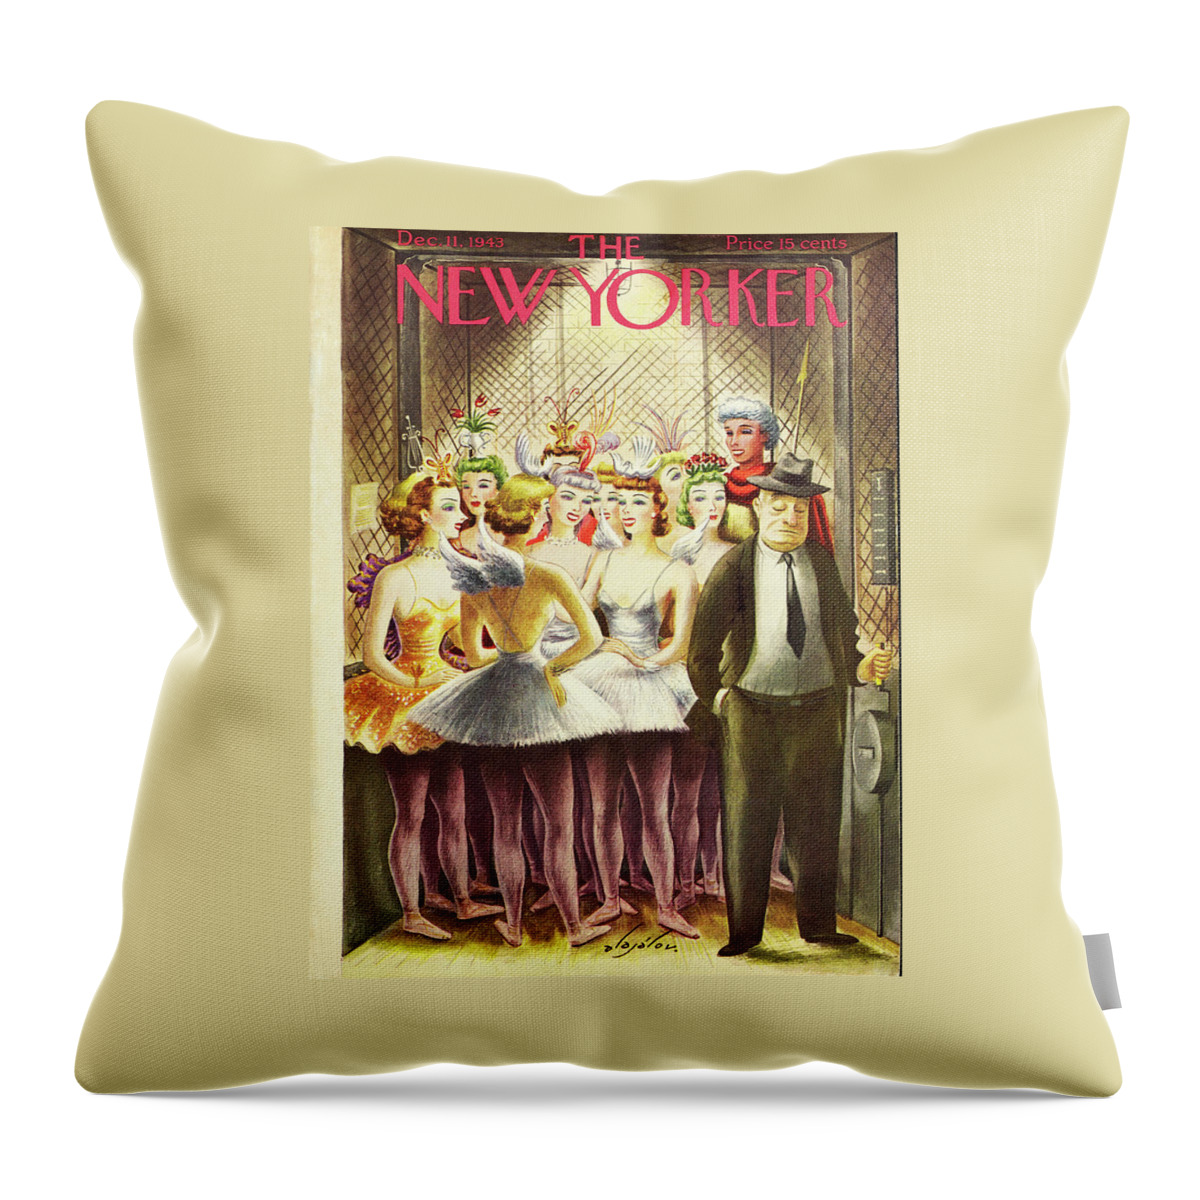 New Yorker December 11 1943 Throw Pillow